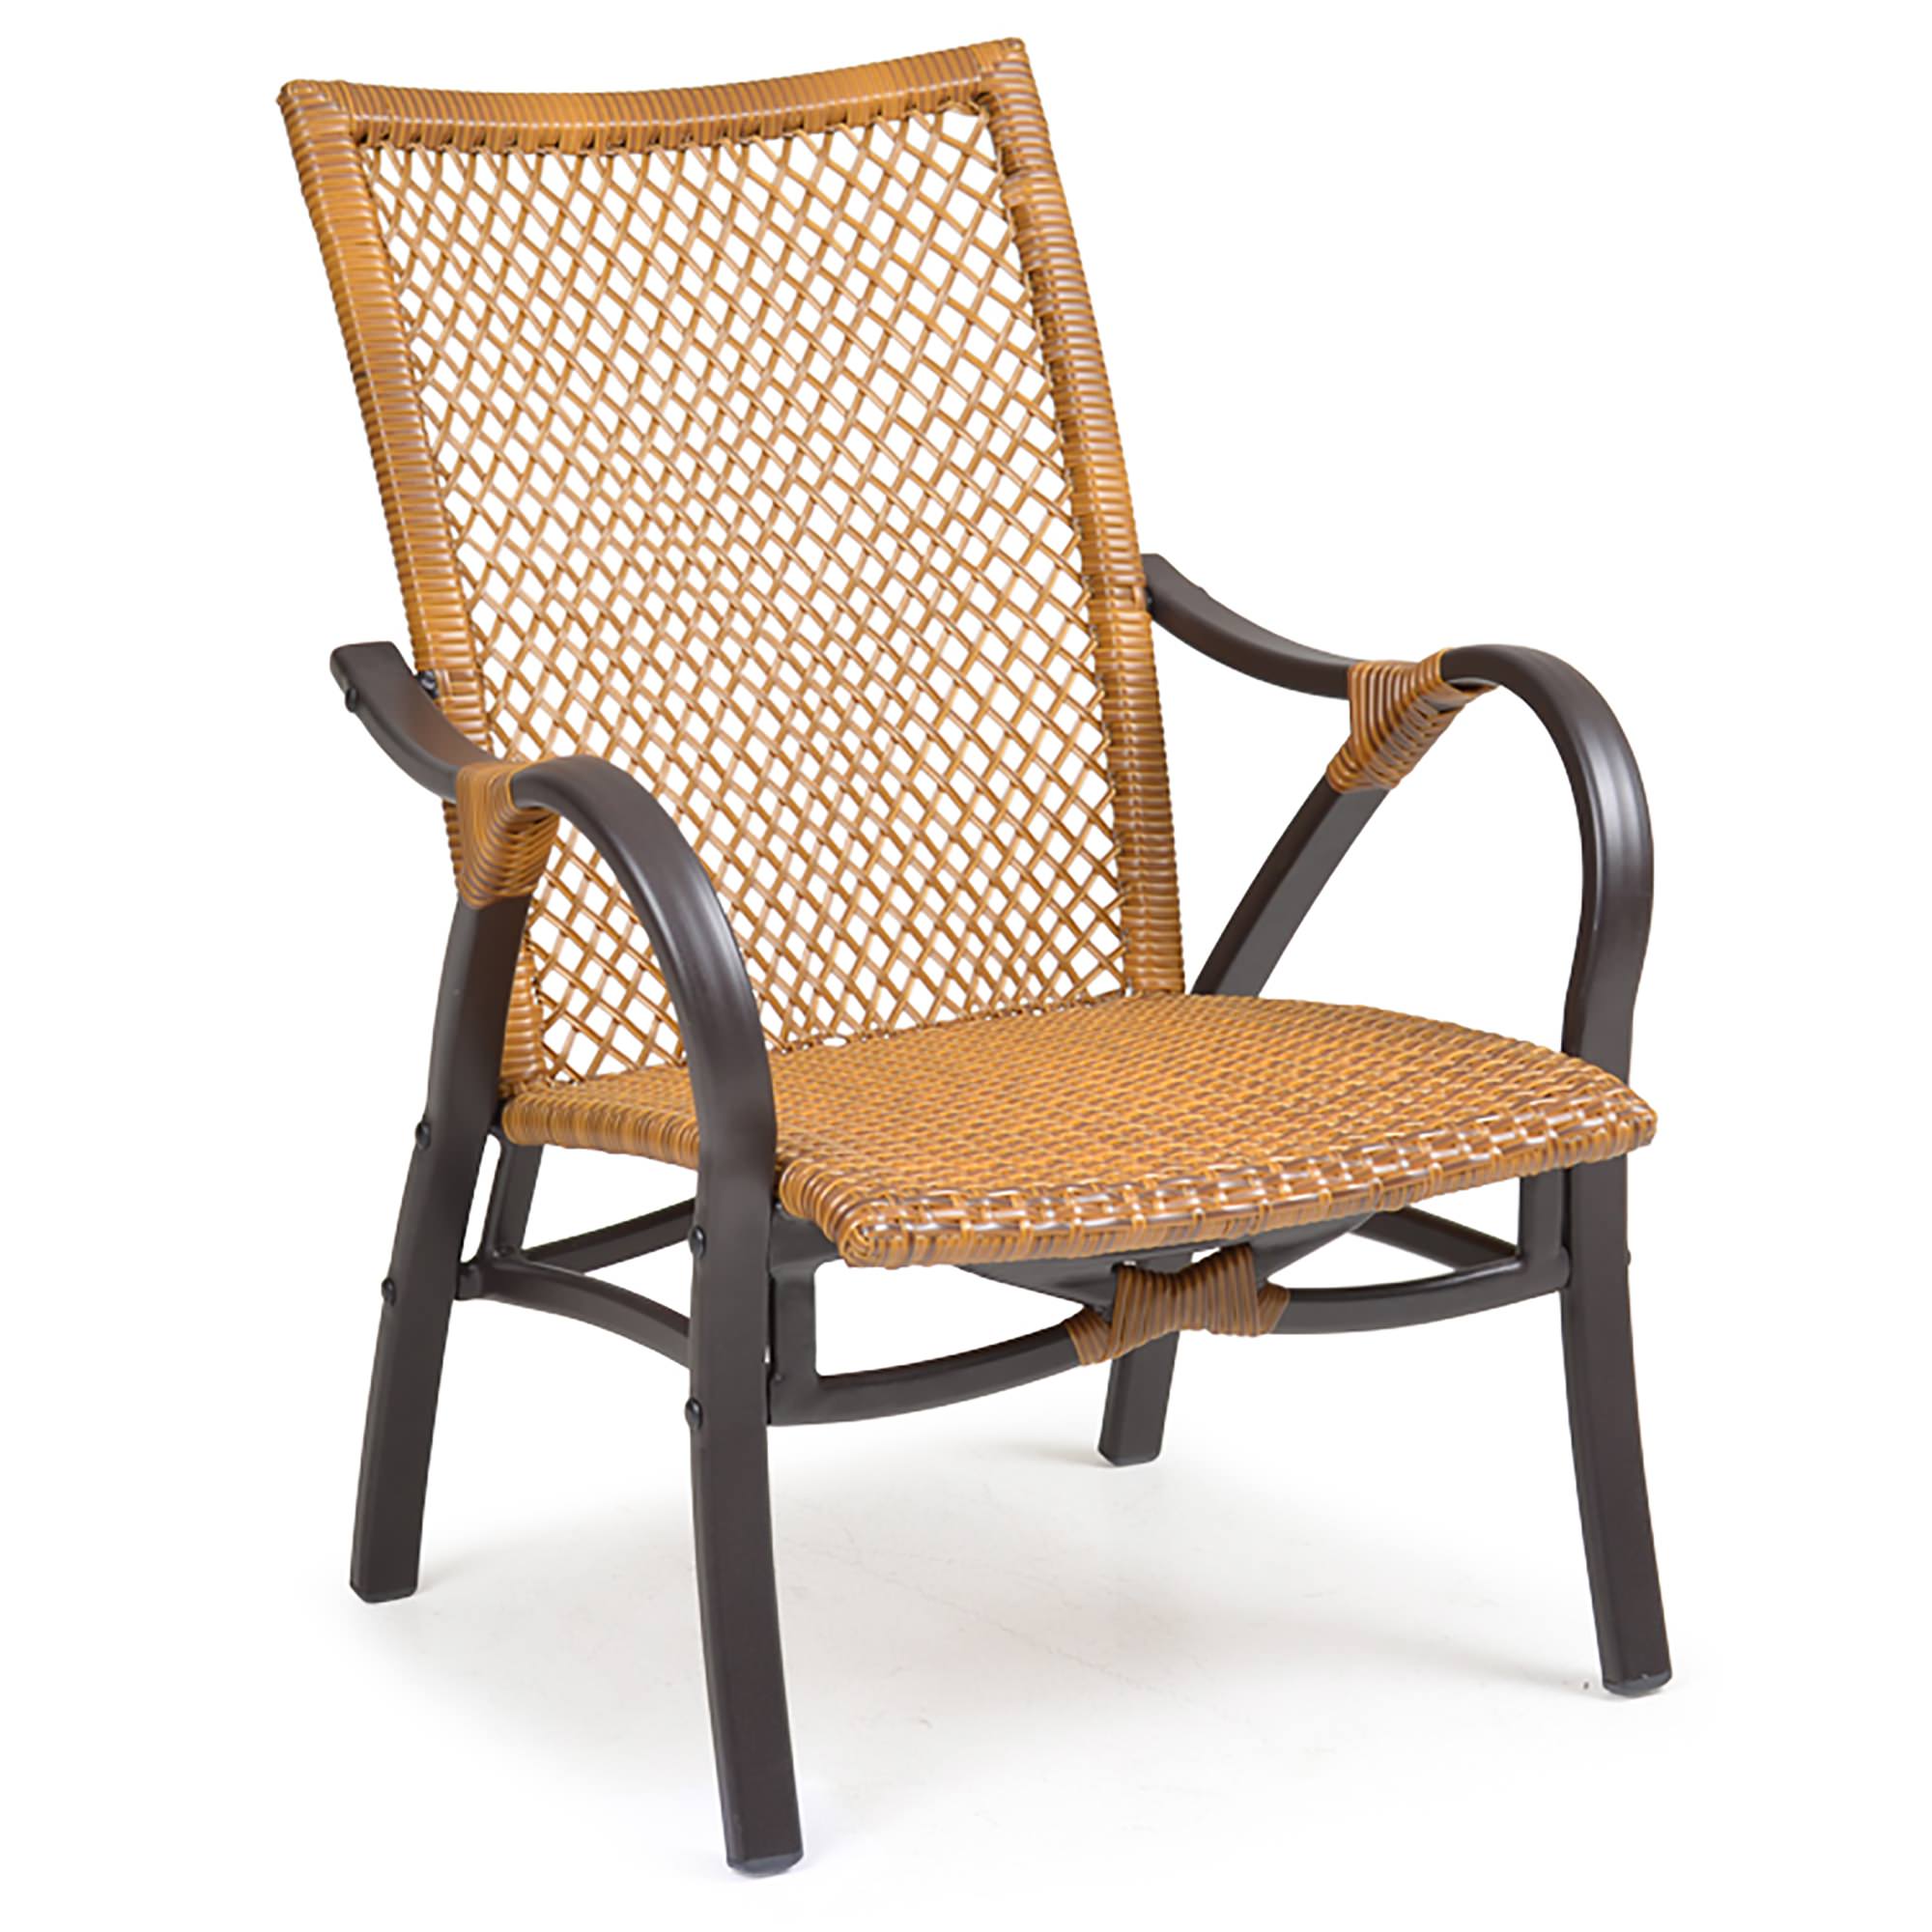 WaterMark Living Resin Wicker Lounge Chair